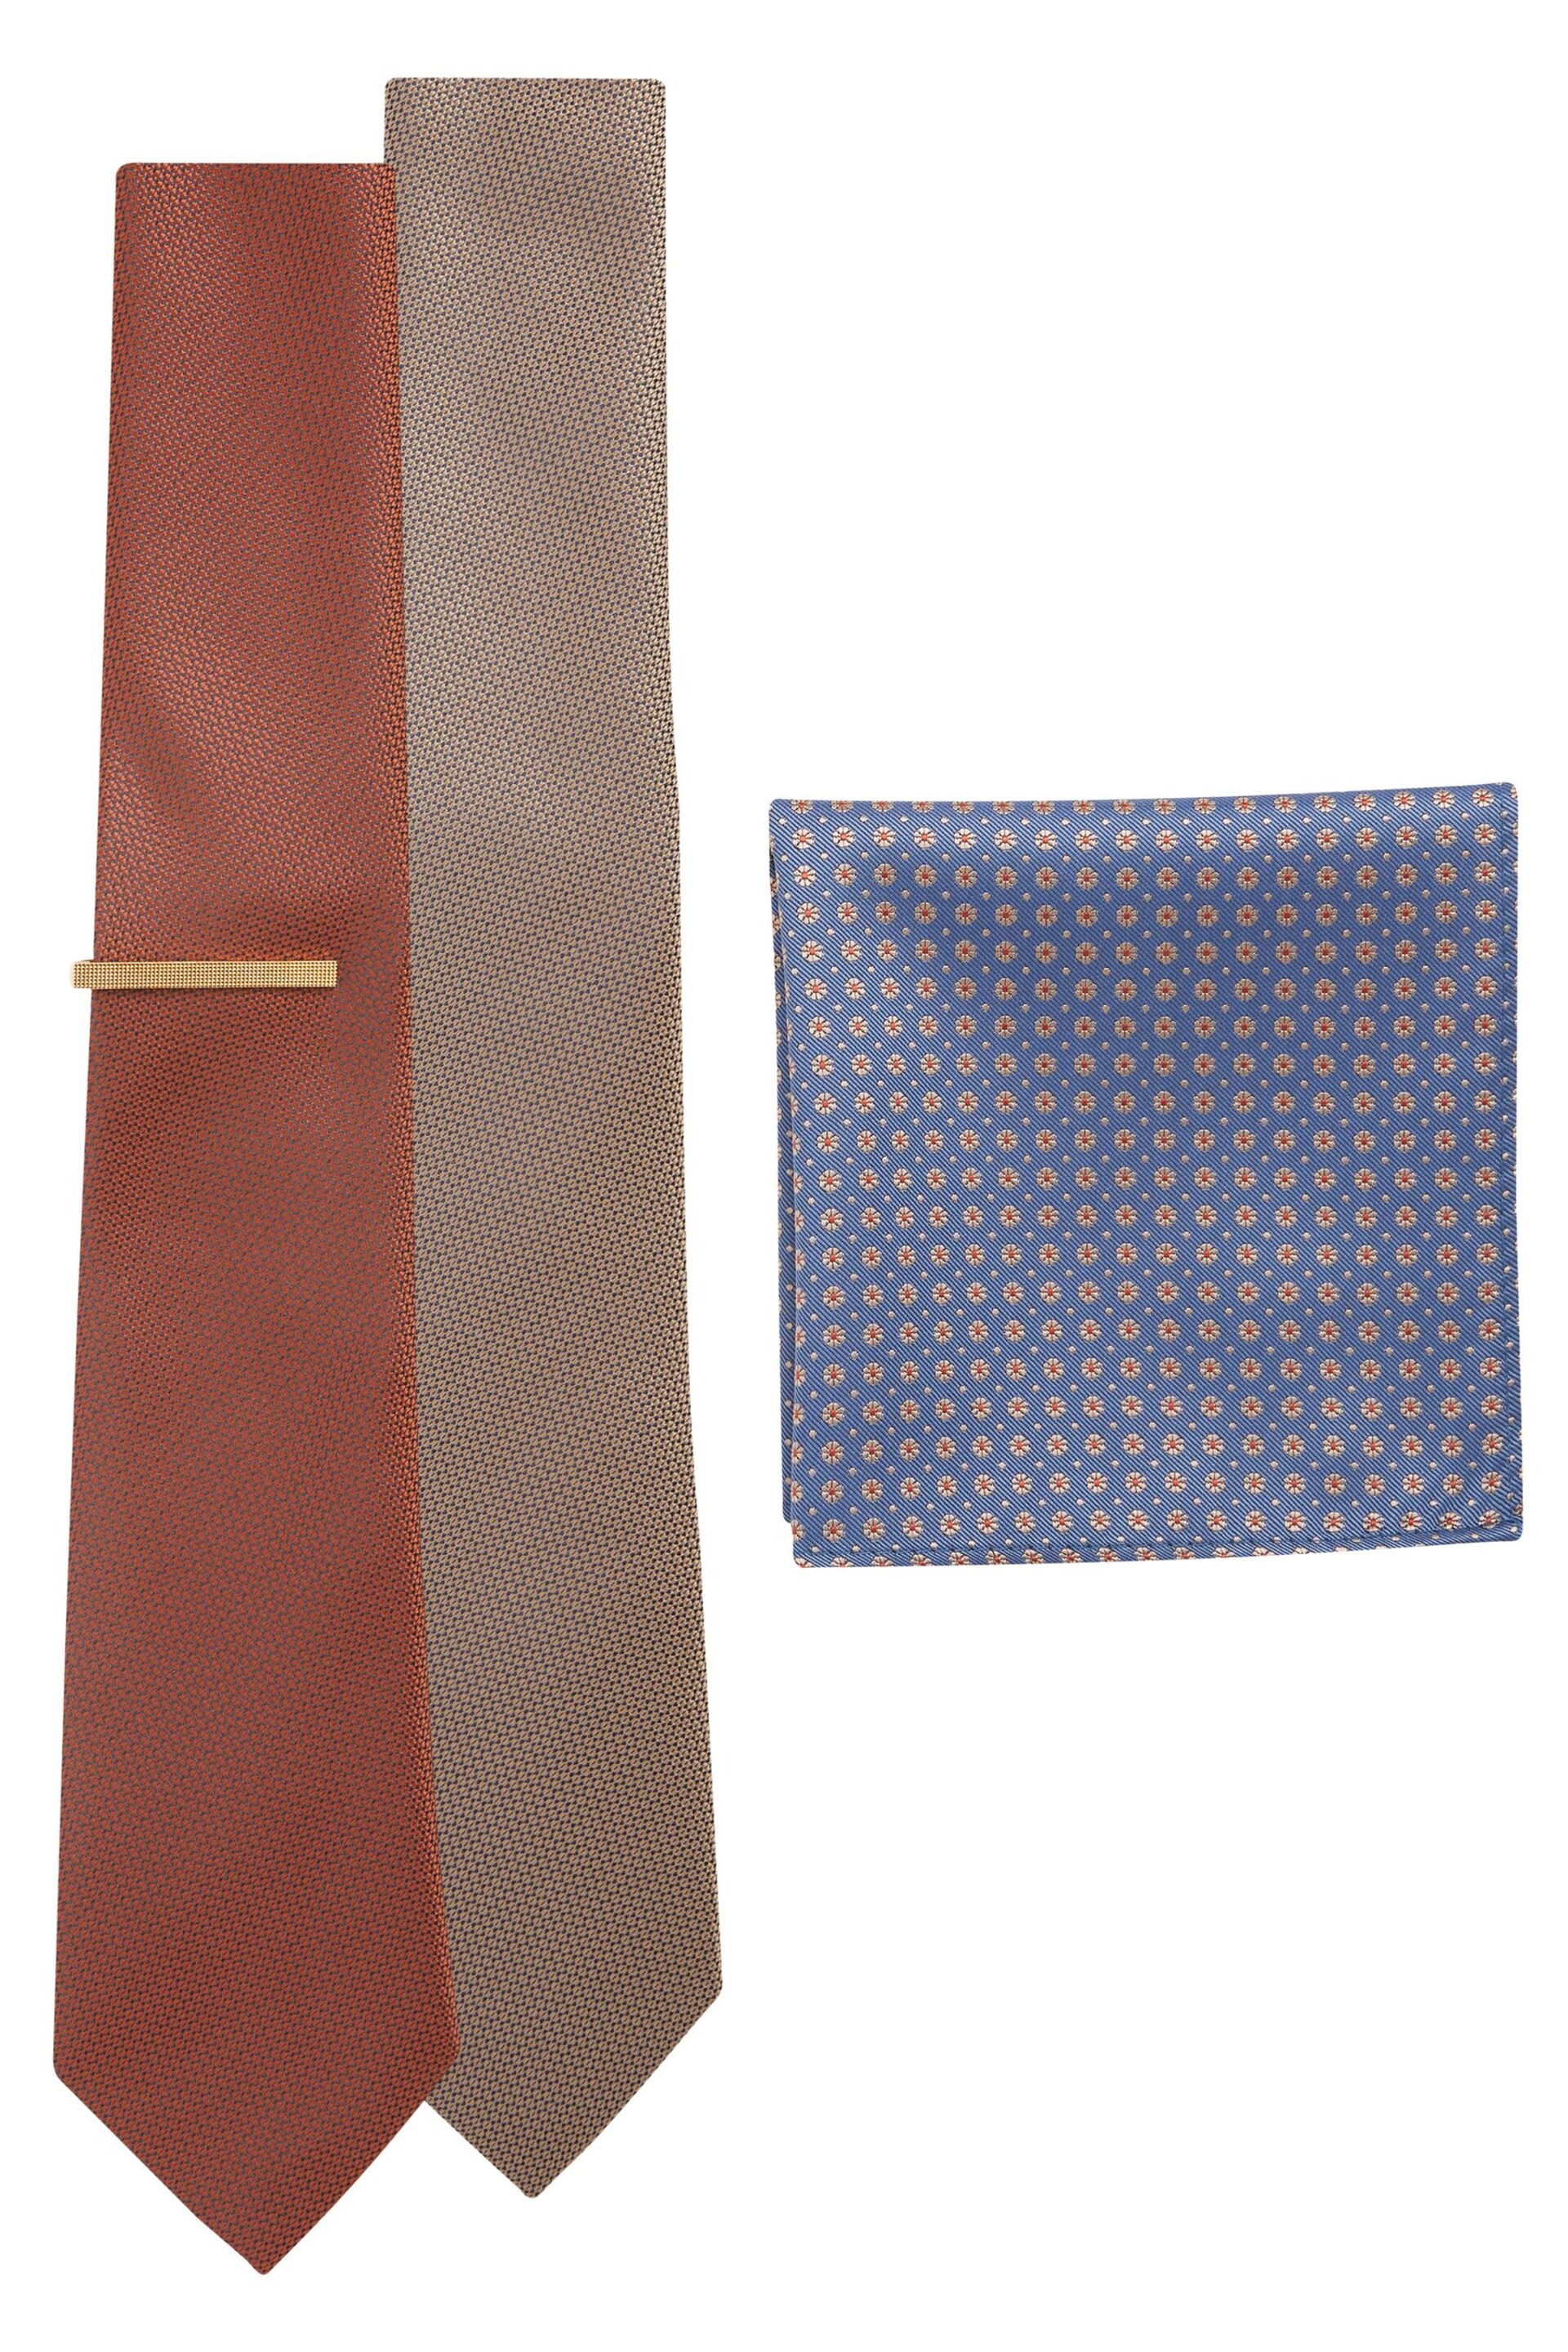 Neutral Brown/Rust Orange 2 Pack Textured Ties And Pocket Sqaure Set - Image 2 of 8